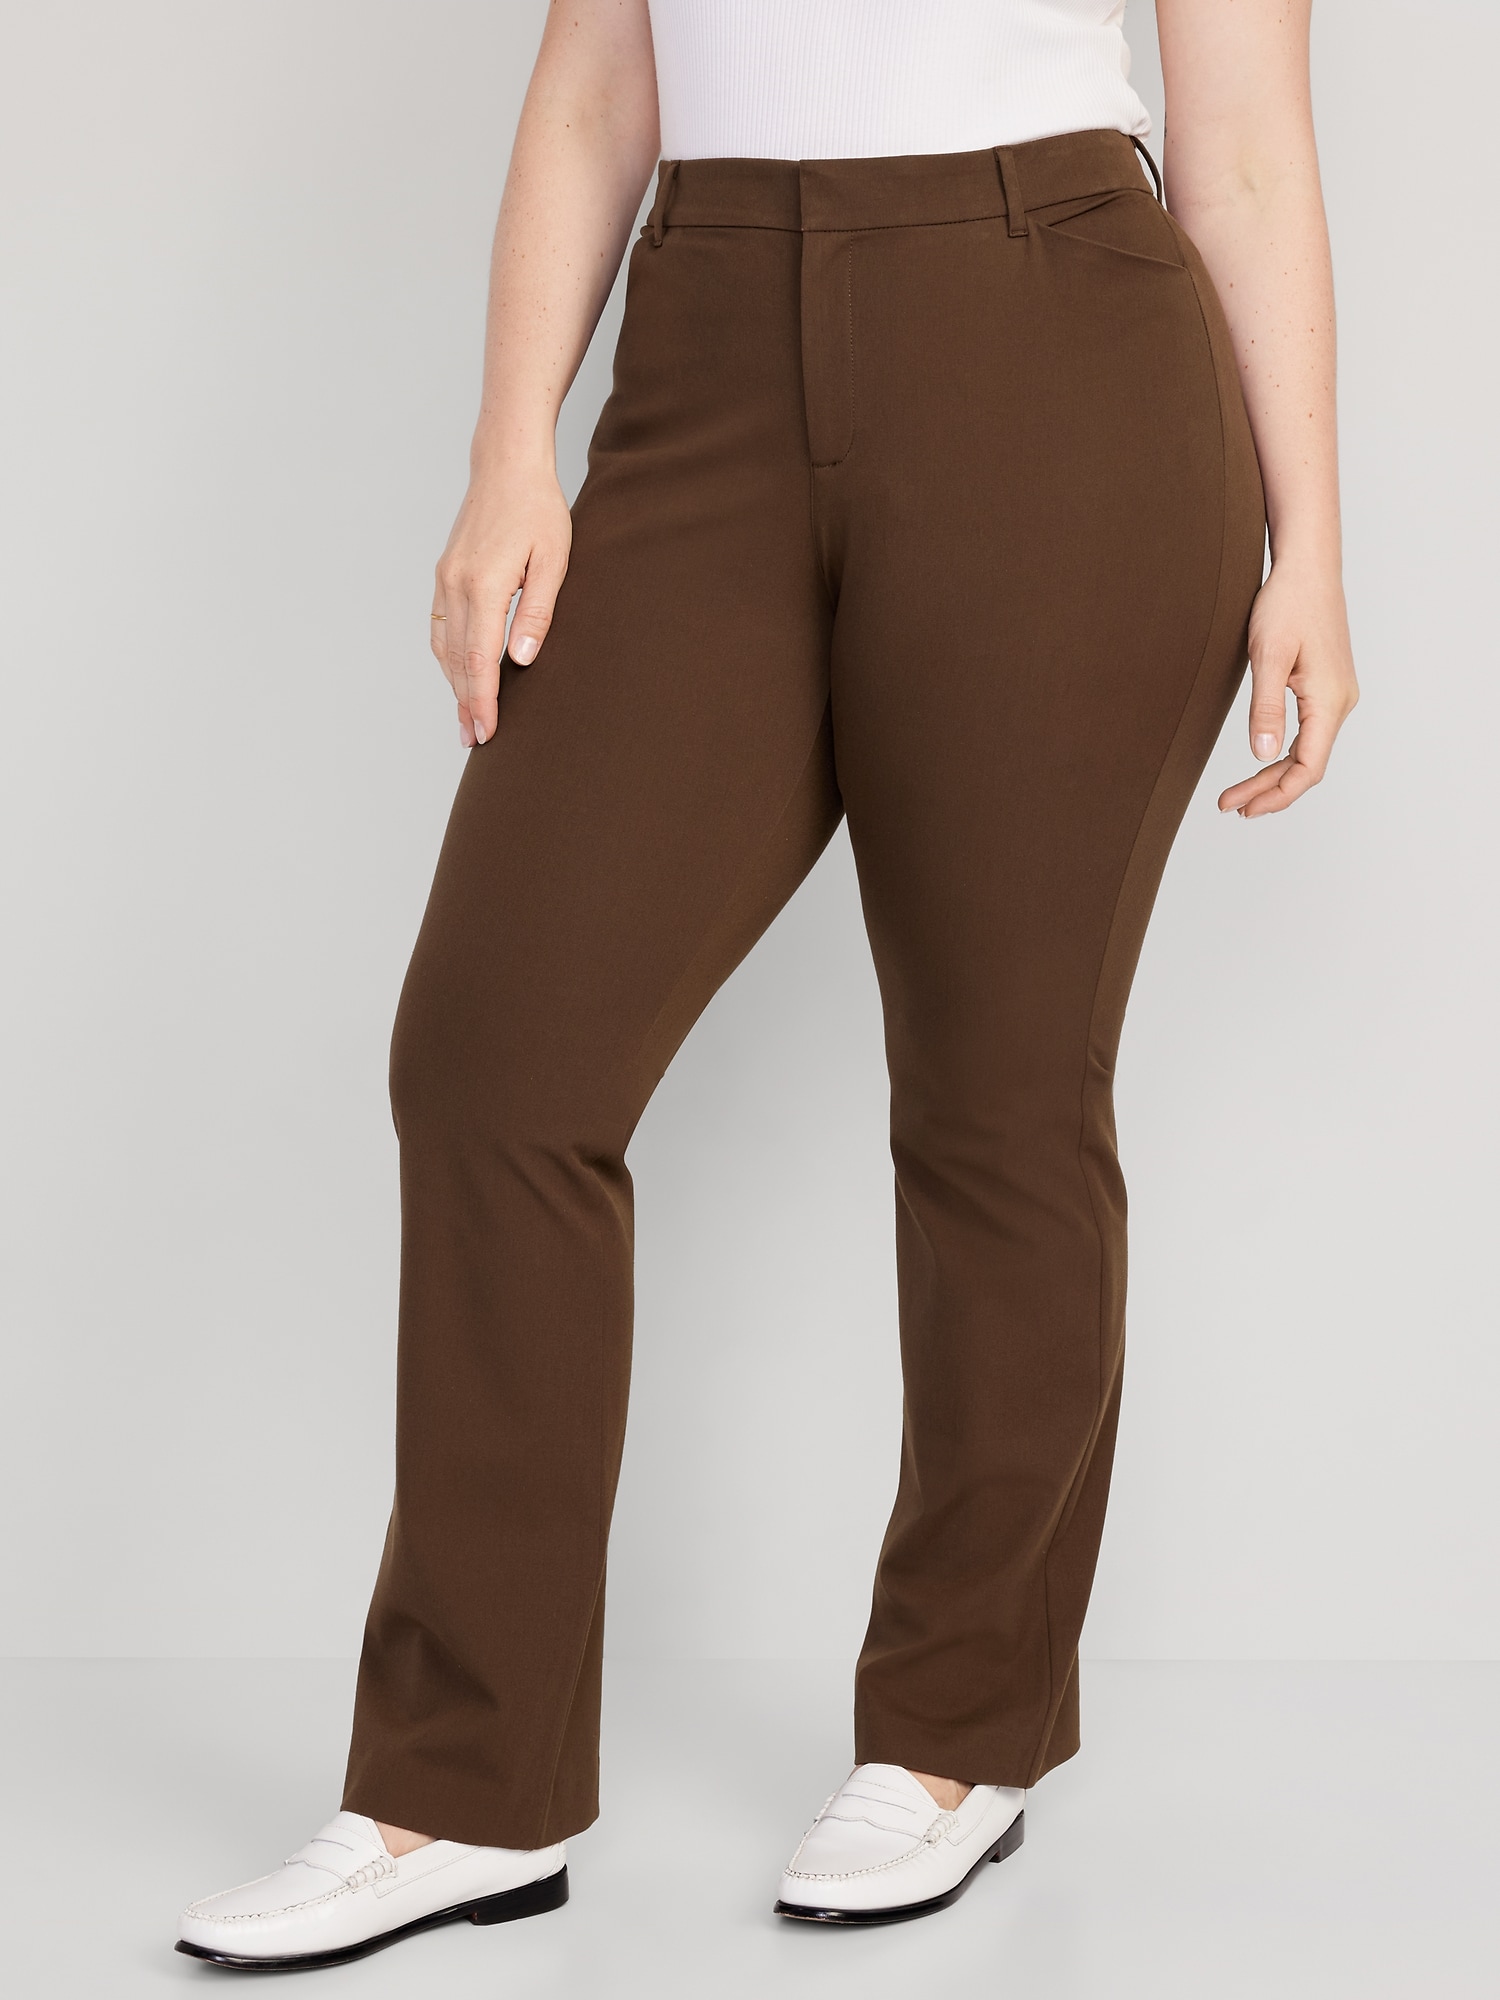 456-Gap tan pants size 8R Gap tan pants size 8R 16 inches waist